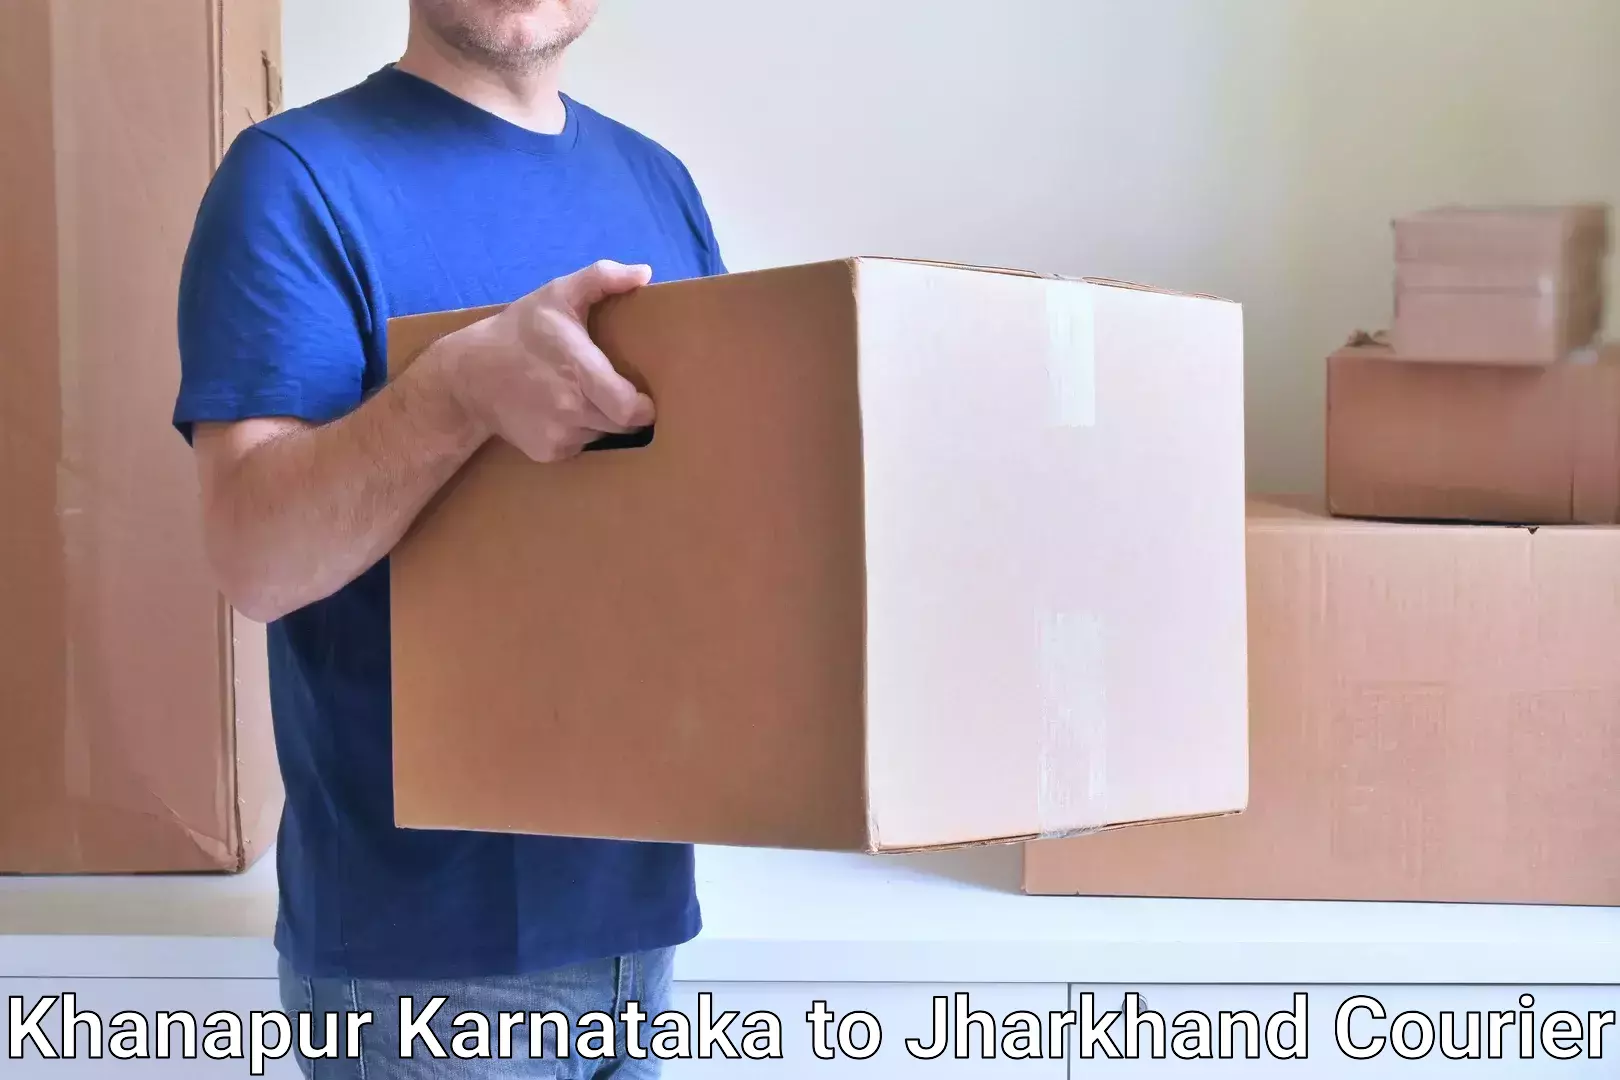 Bulk shipment Khanapur Karnataka to Nirsa